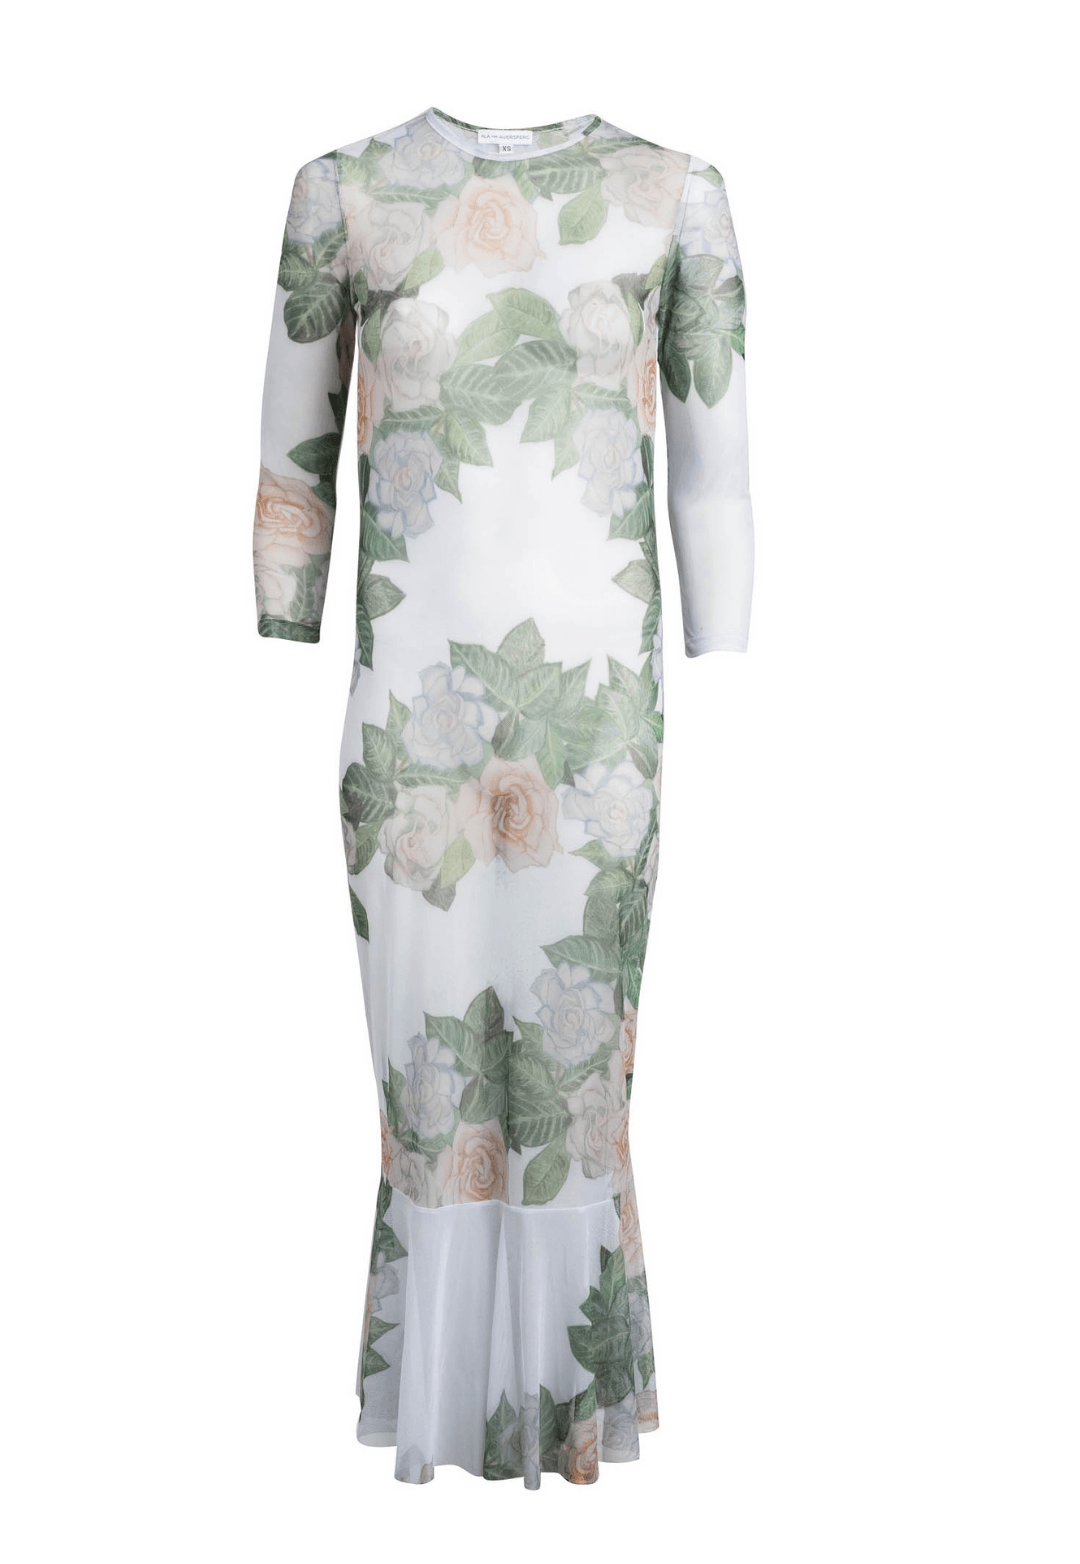 Mesh short gardenia printed ruffle dress